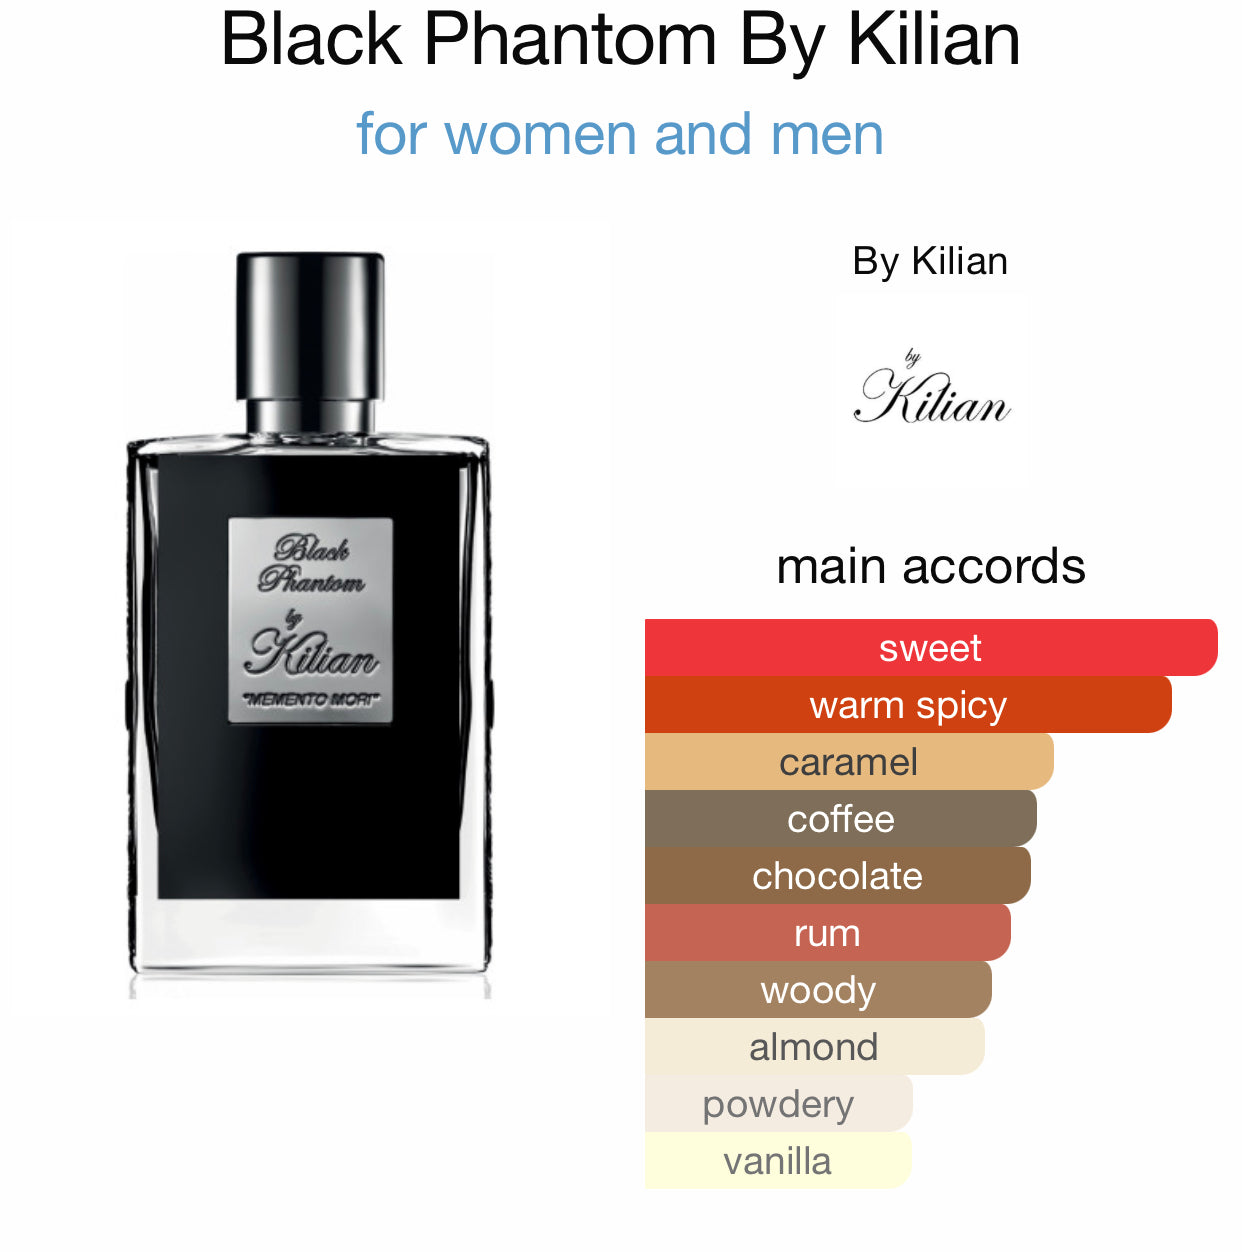 Inspired by Black Phantom Eau de Parfum